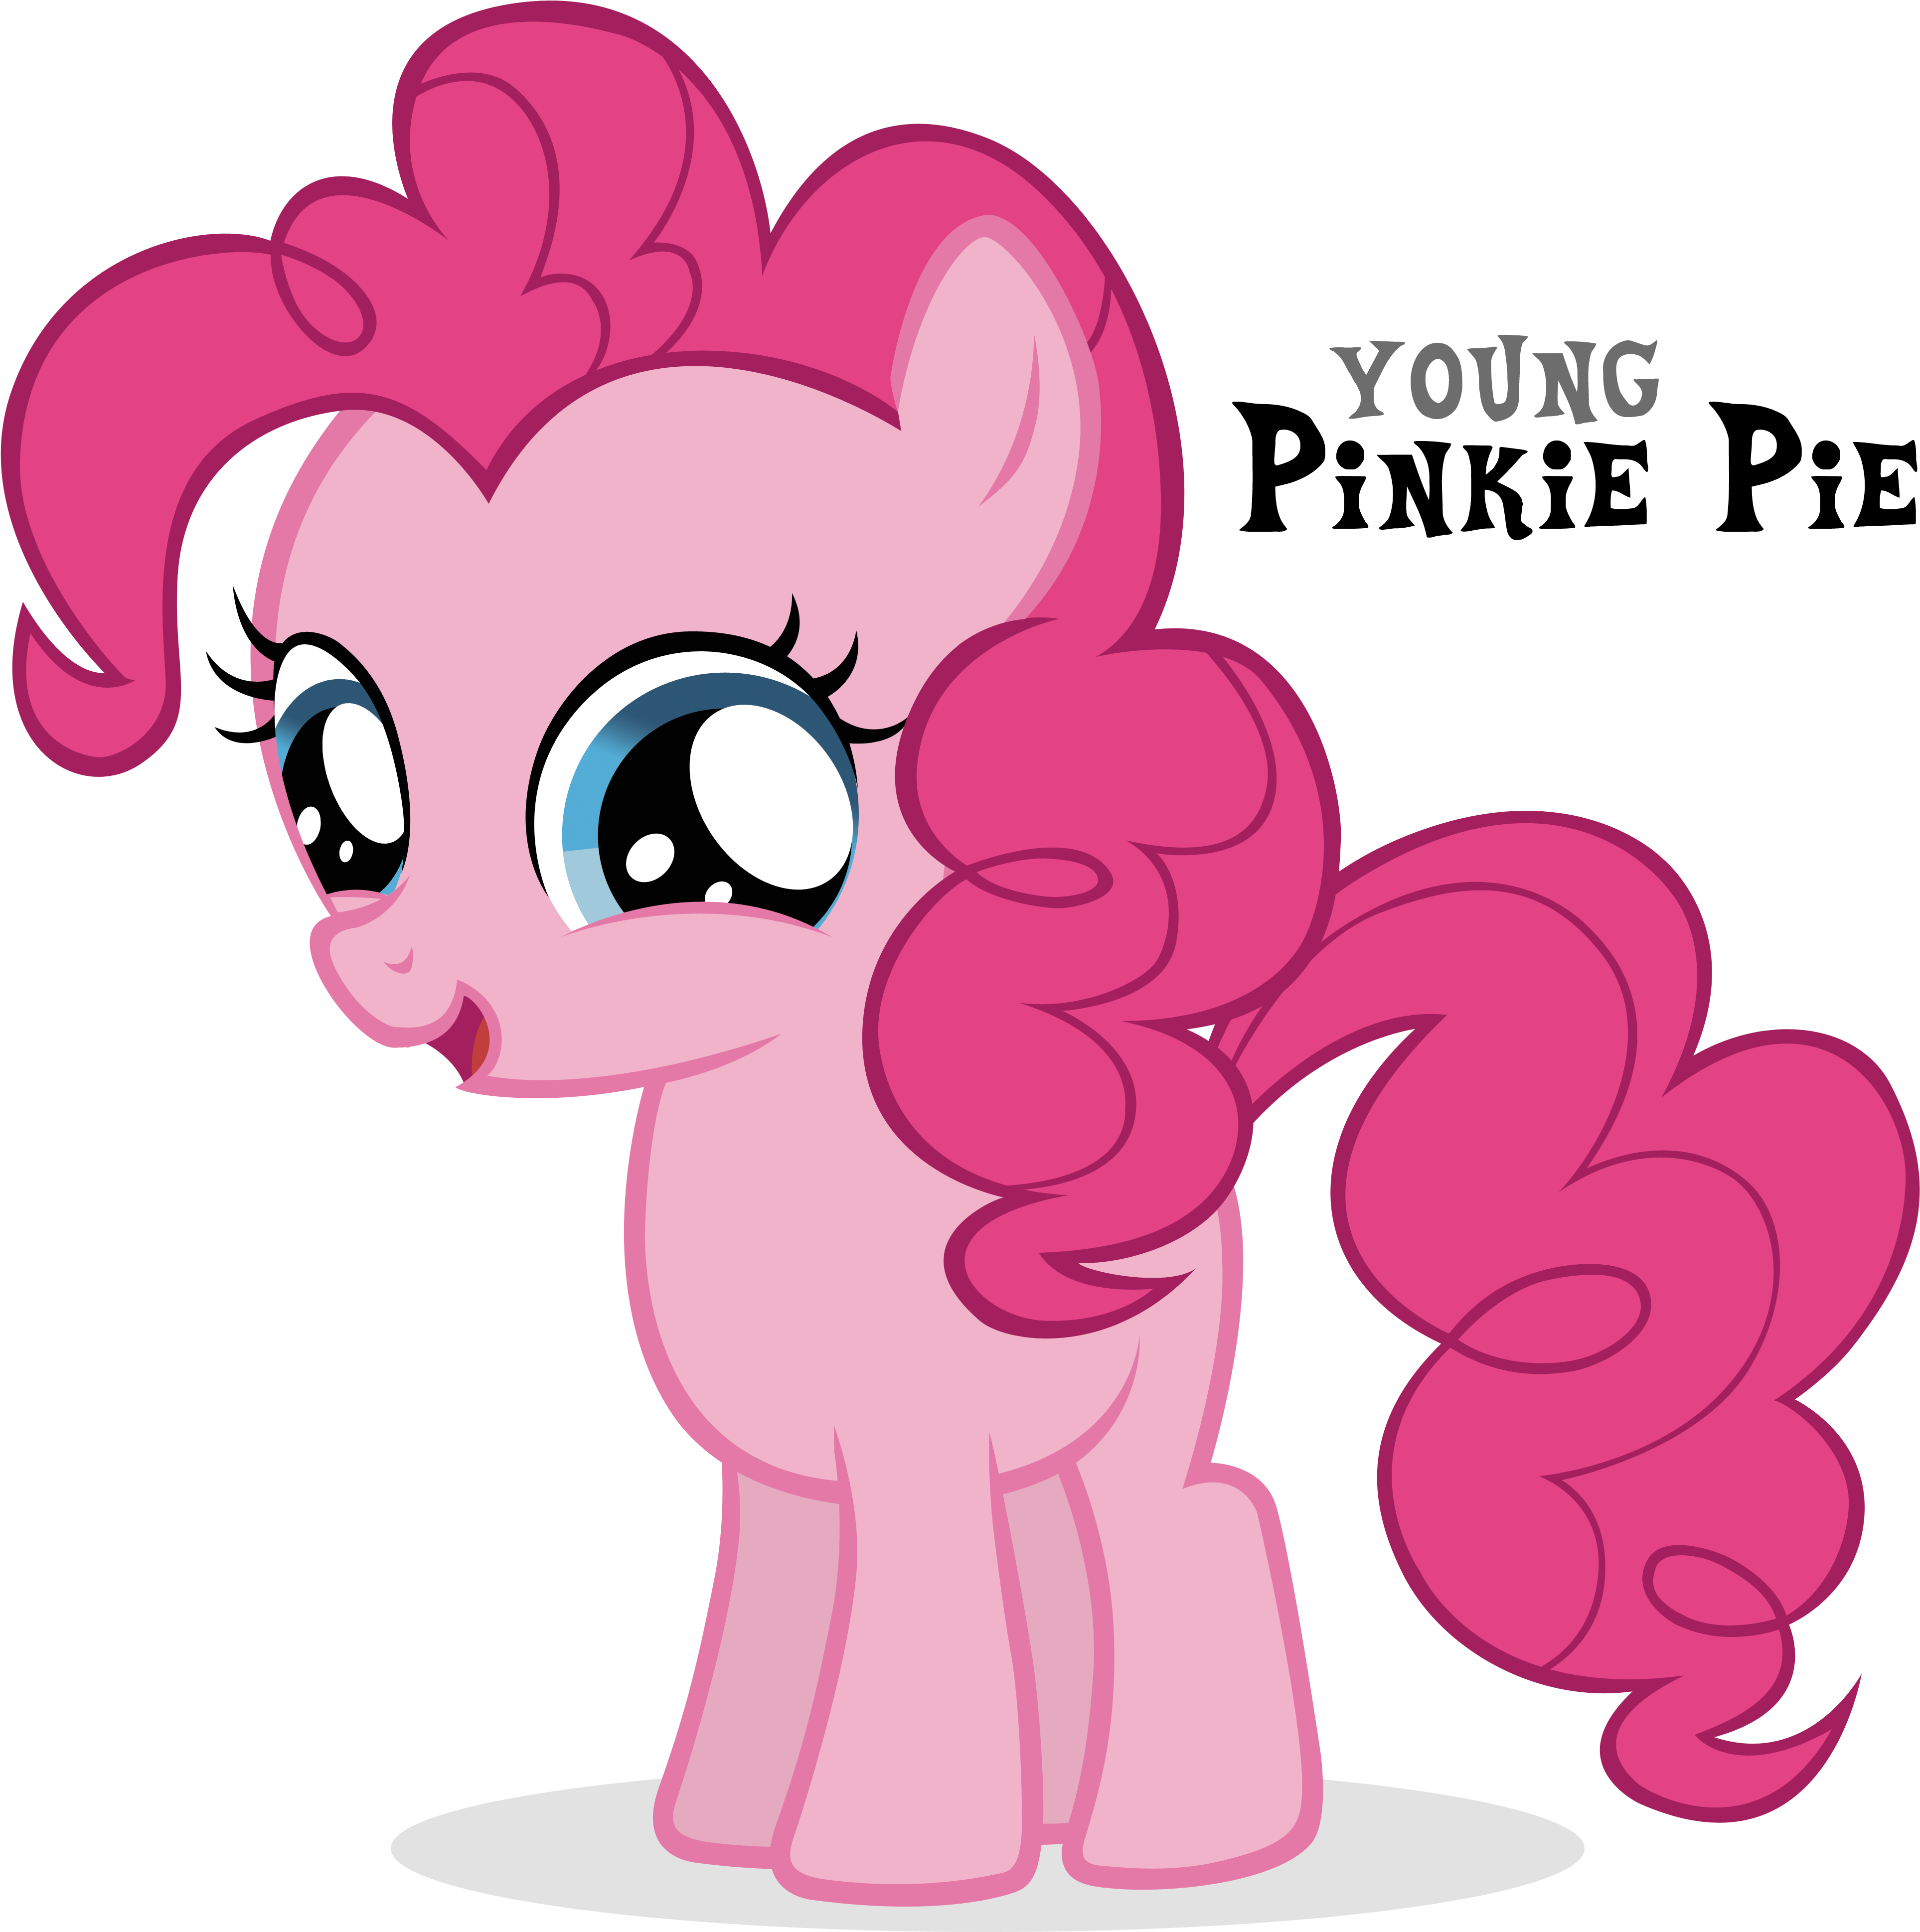 Как зовут розовую пони. Маленький пони Пинки Пай. My little ponyмаленькая Пинки Пай. МЛП Пинки Пай маленькая. My little Pony ПИНКИПАИ.